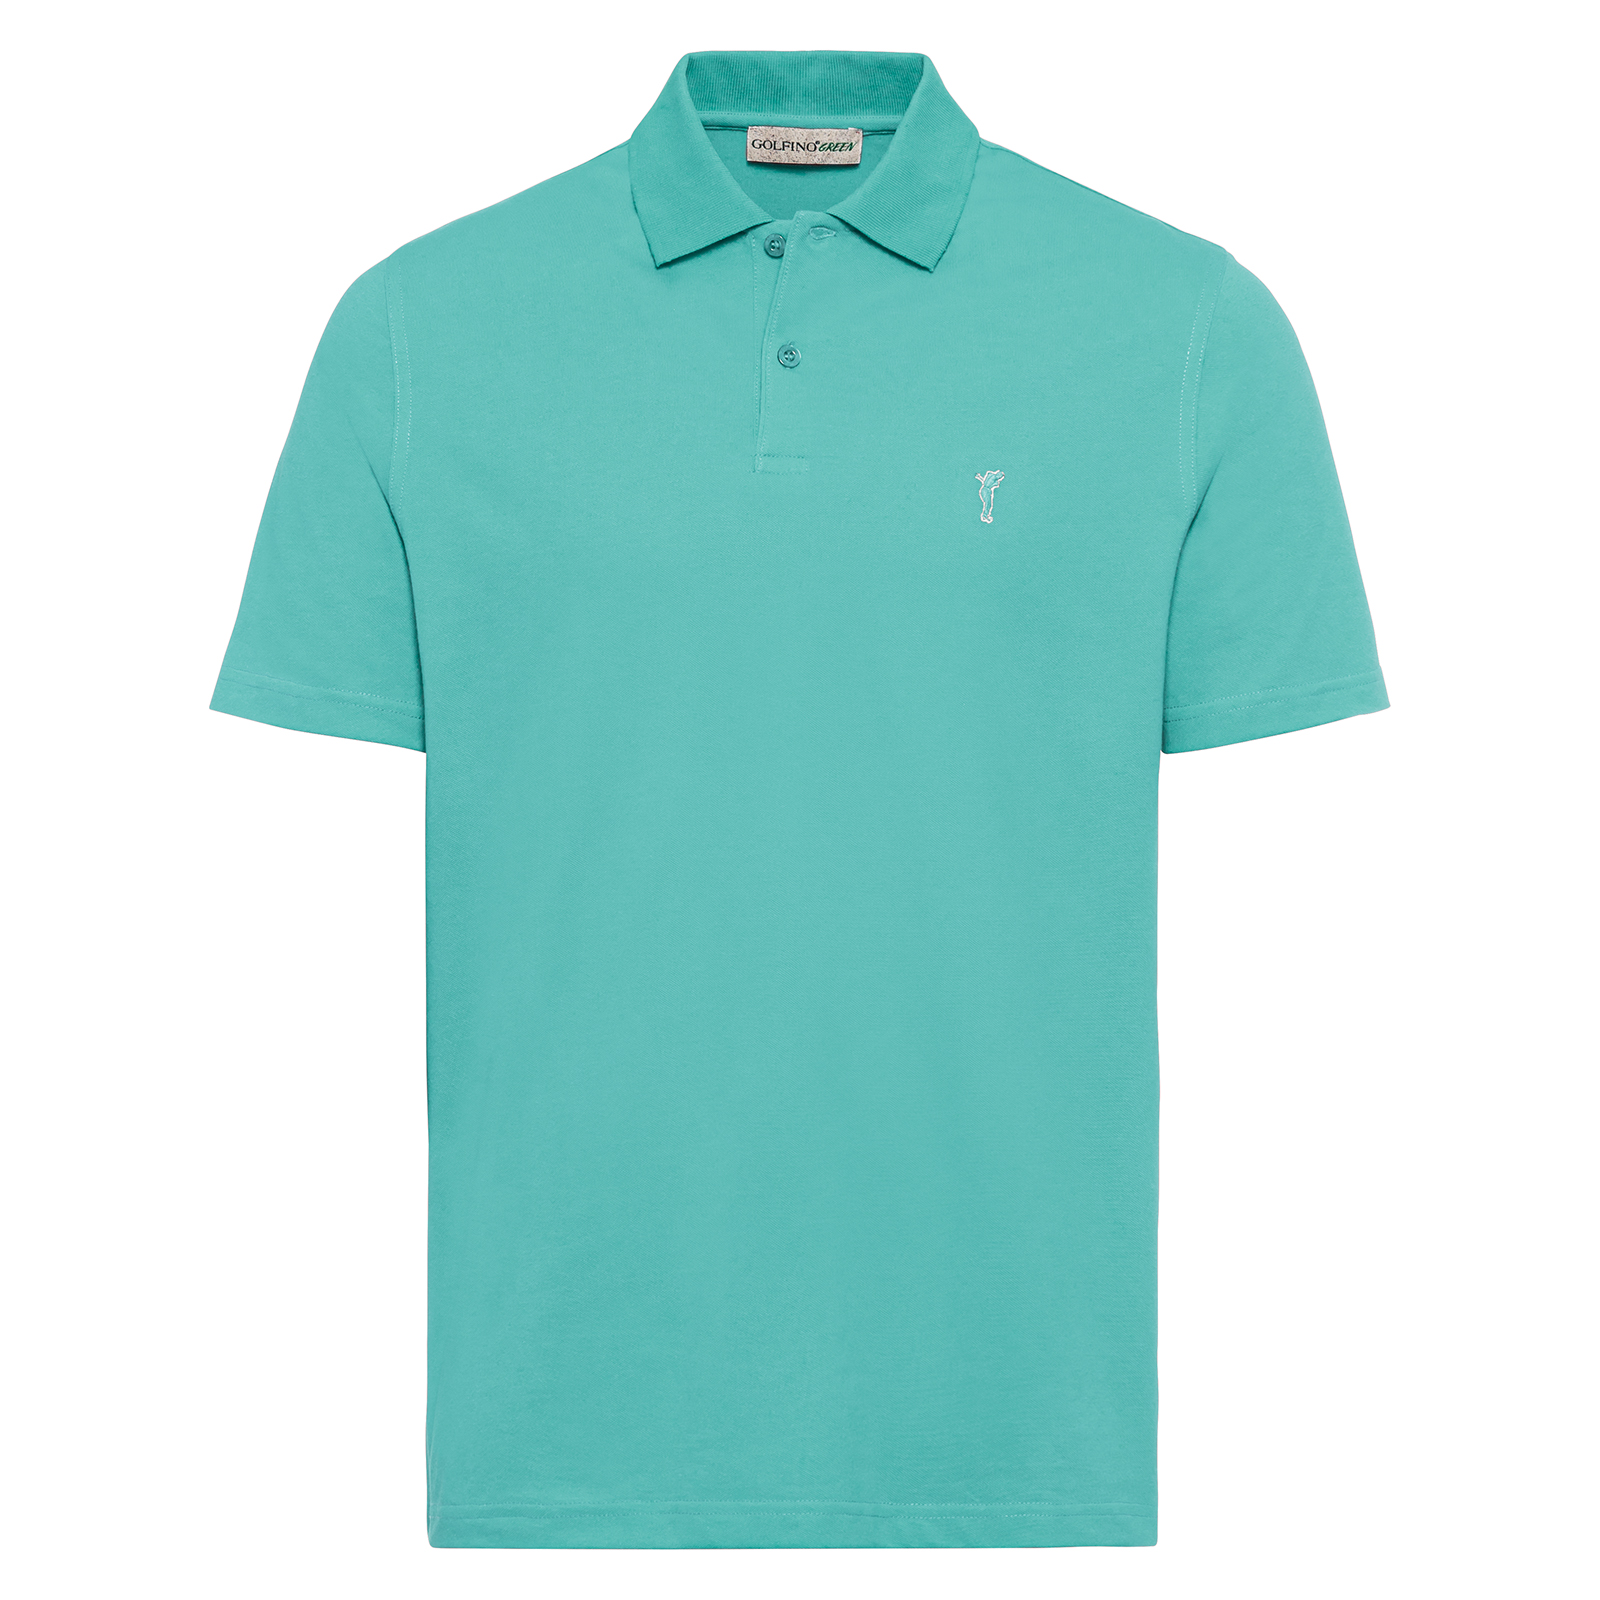 Men's lightweight golf polo shirt